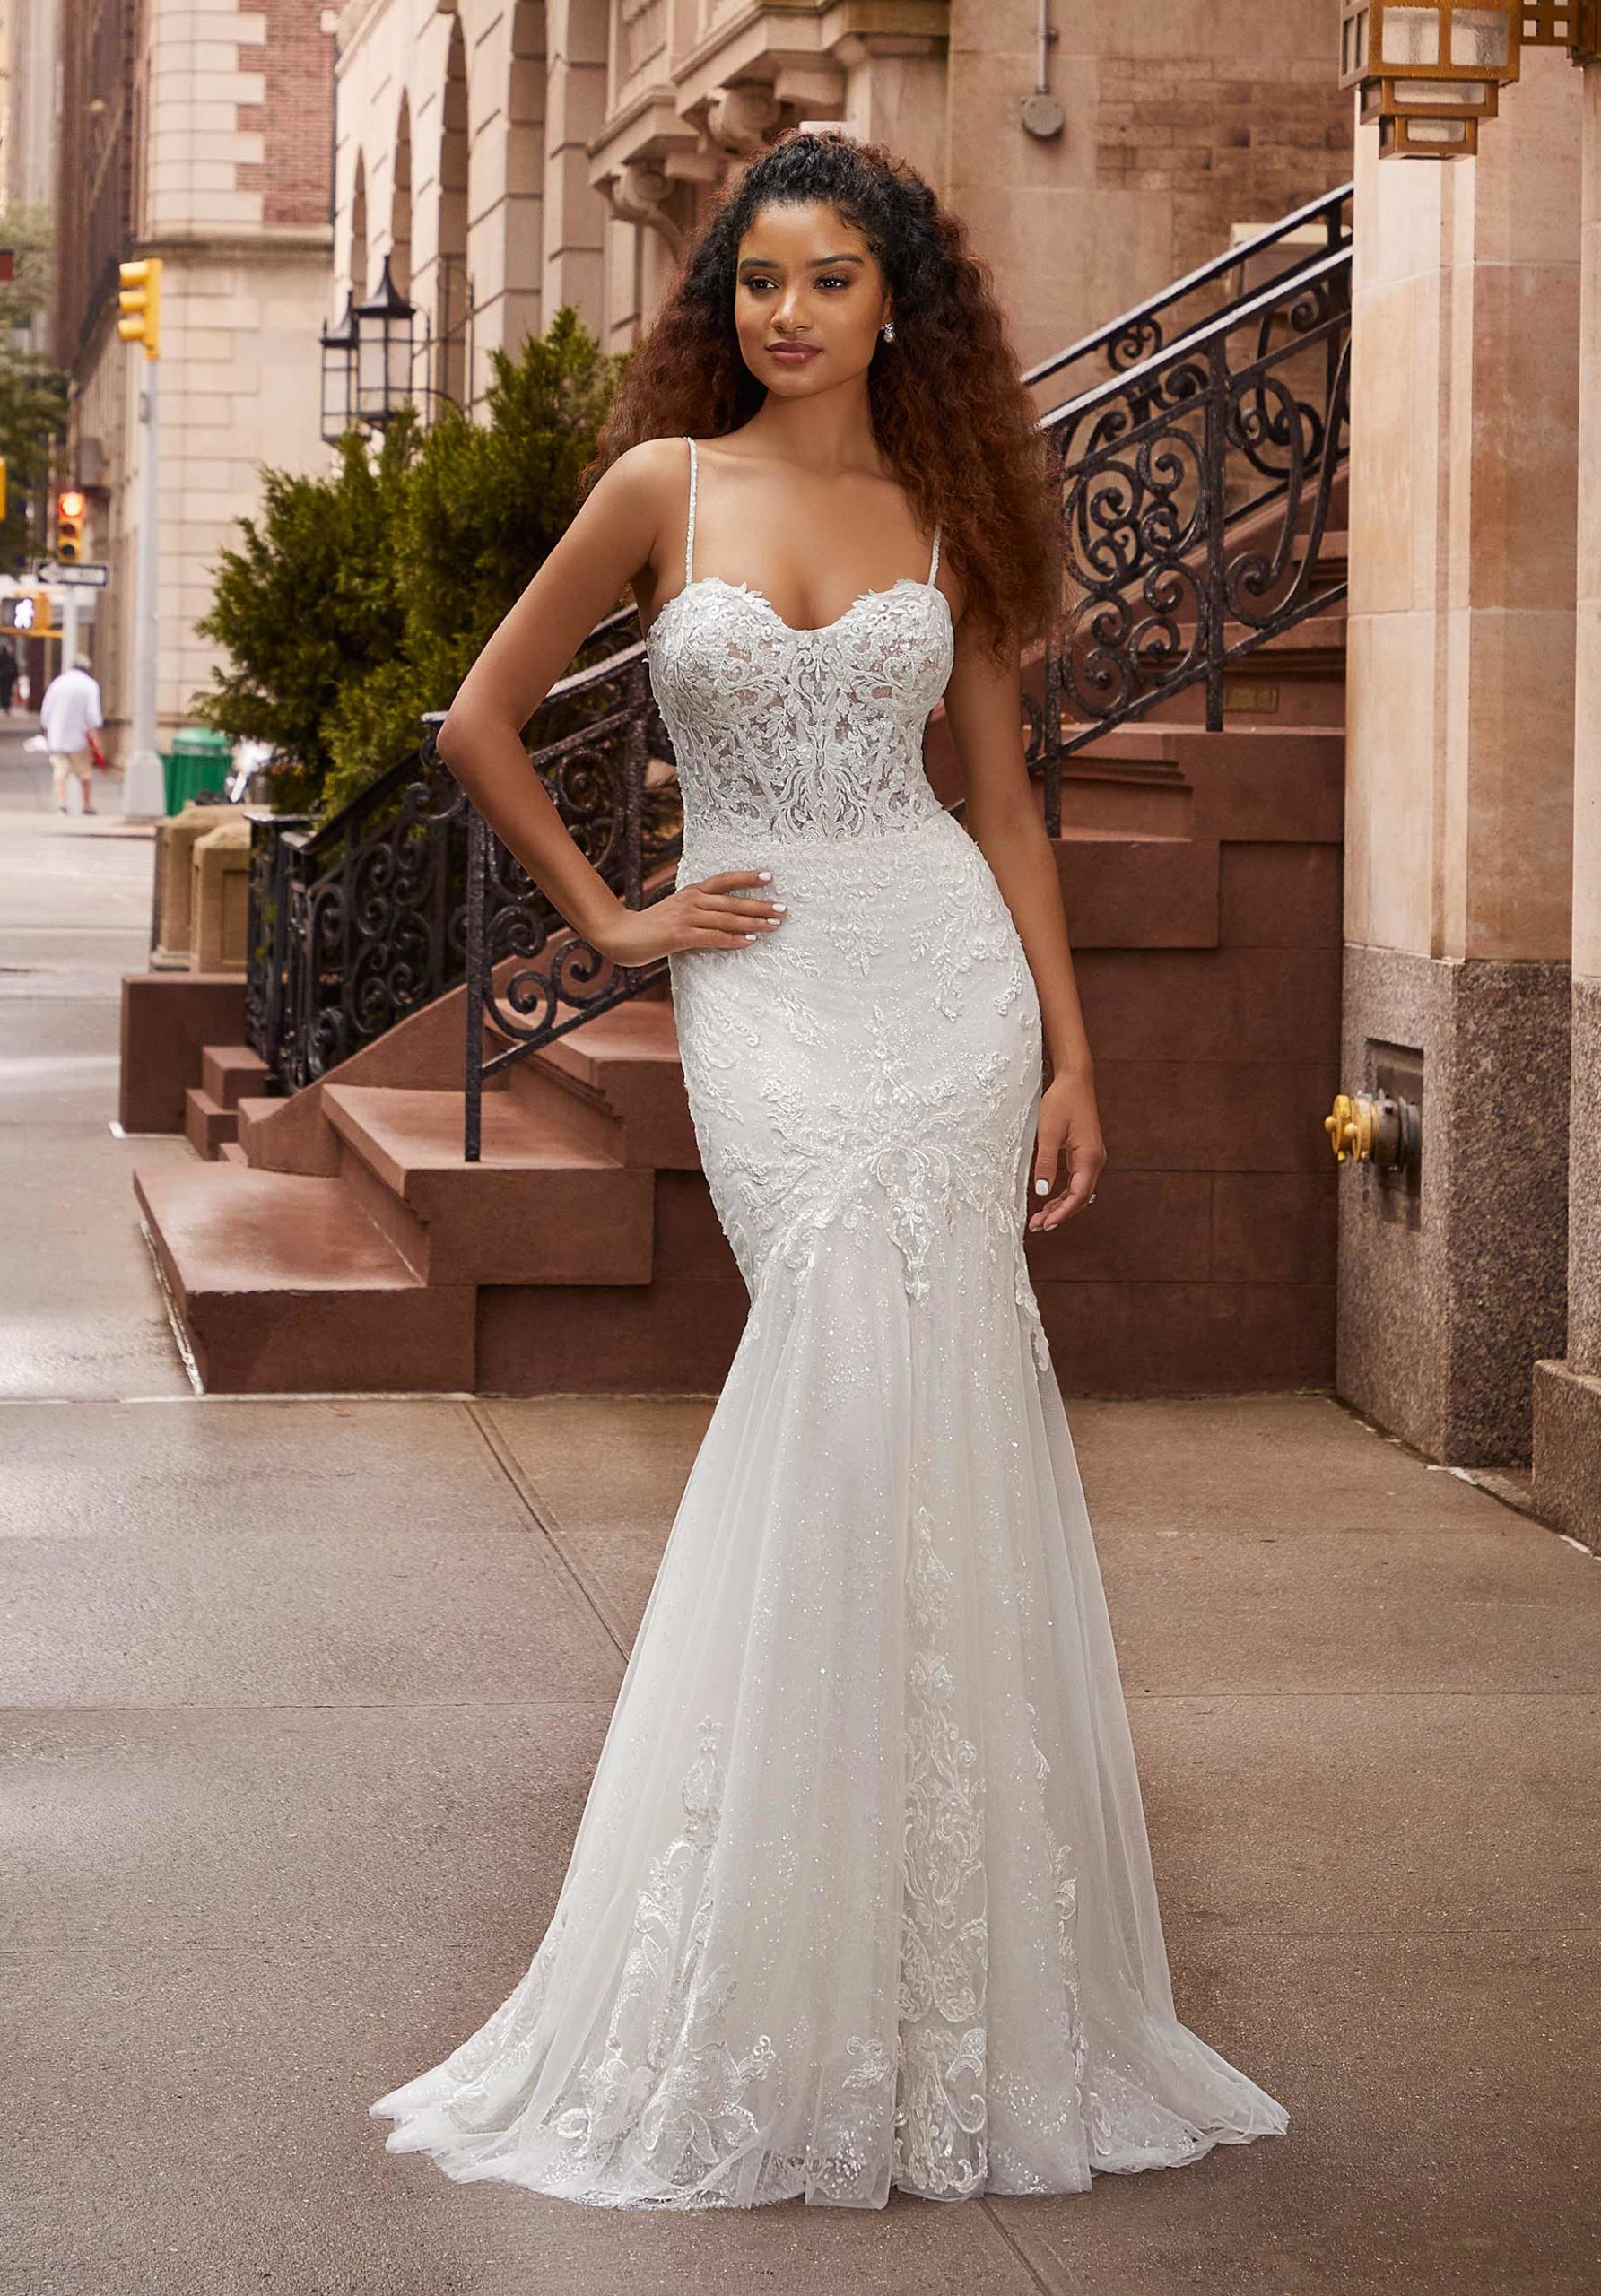 Morilee Wedding Dress, 2507 / Juliet